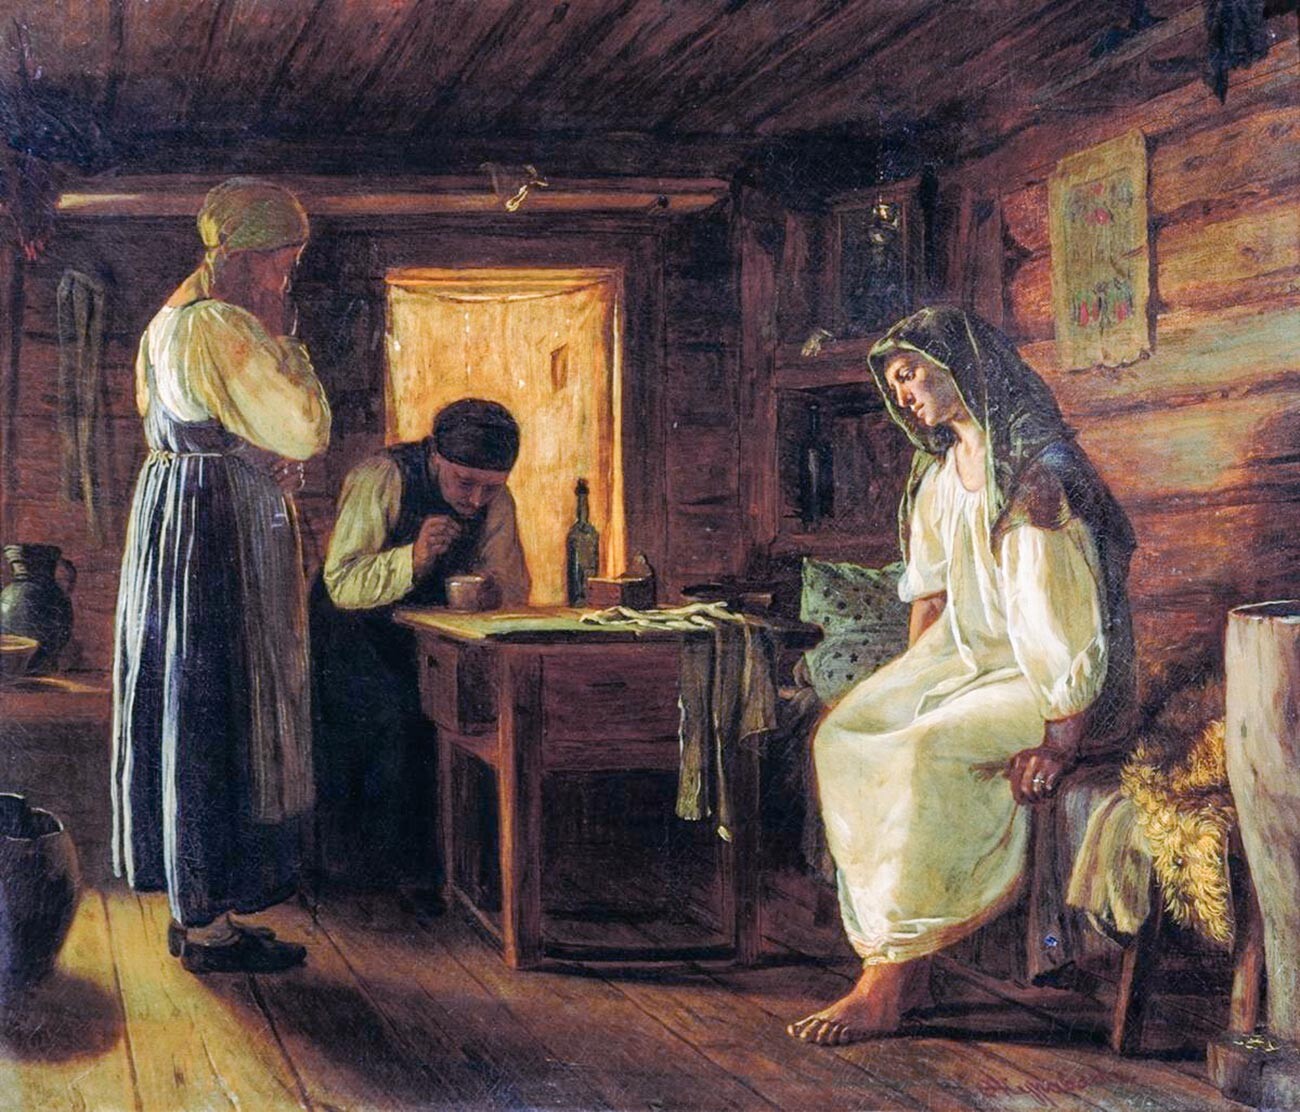 Илустрација из 1867, Фирс Журављов